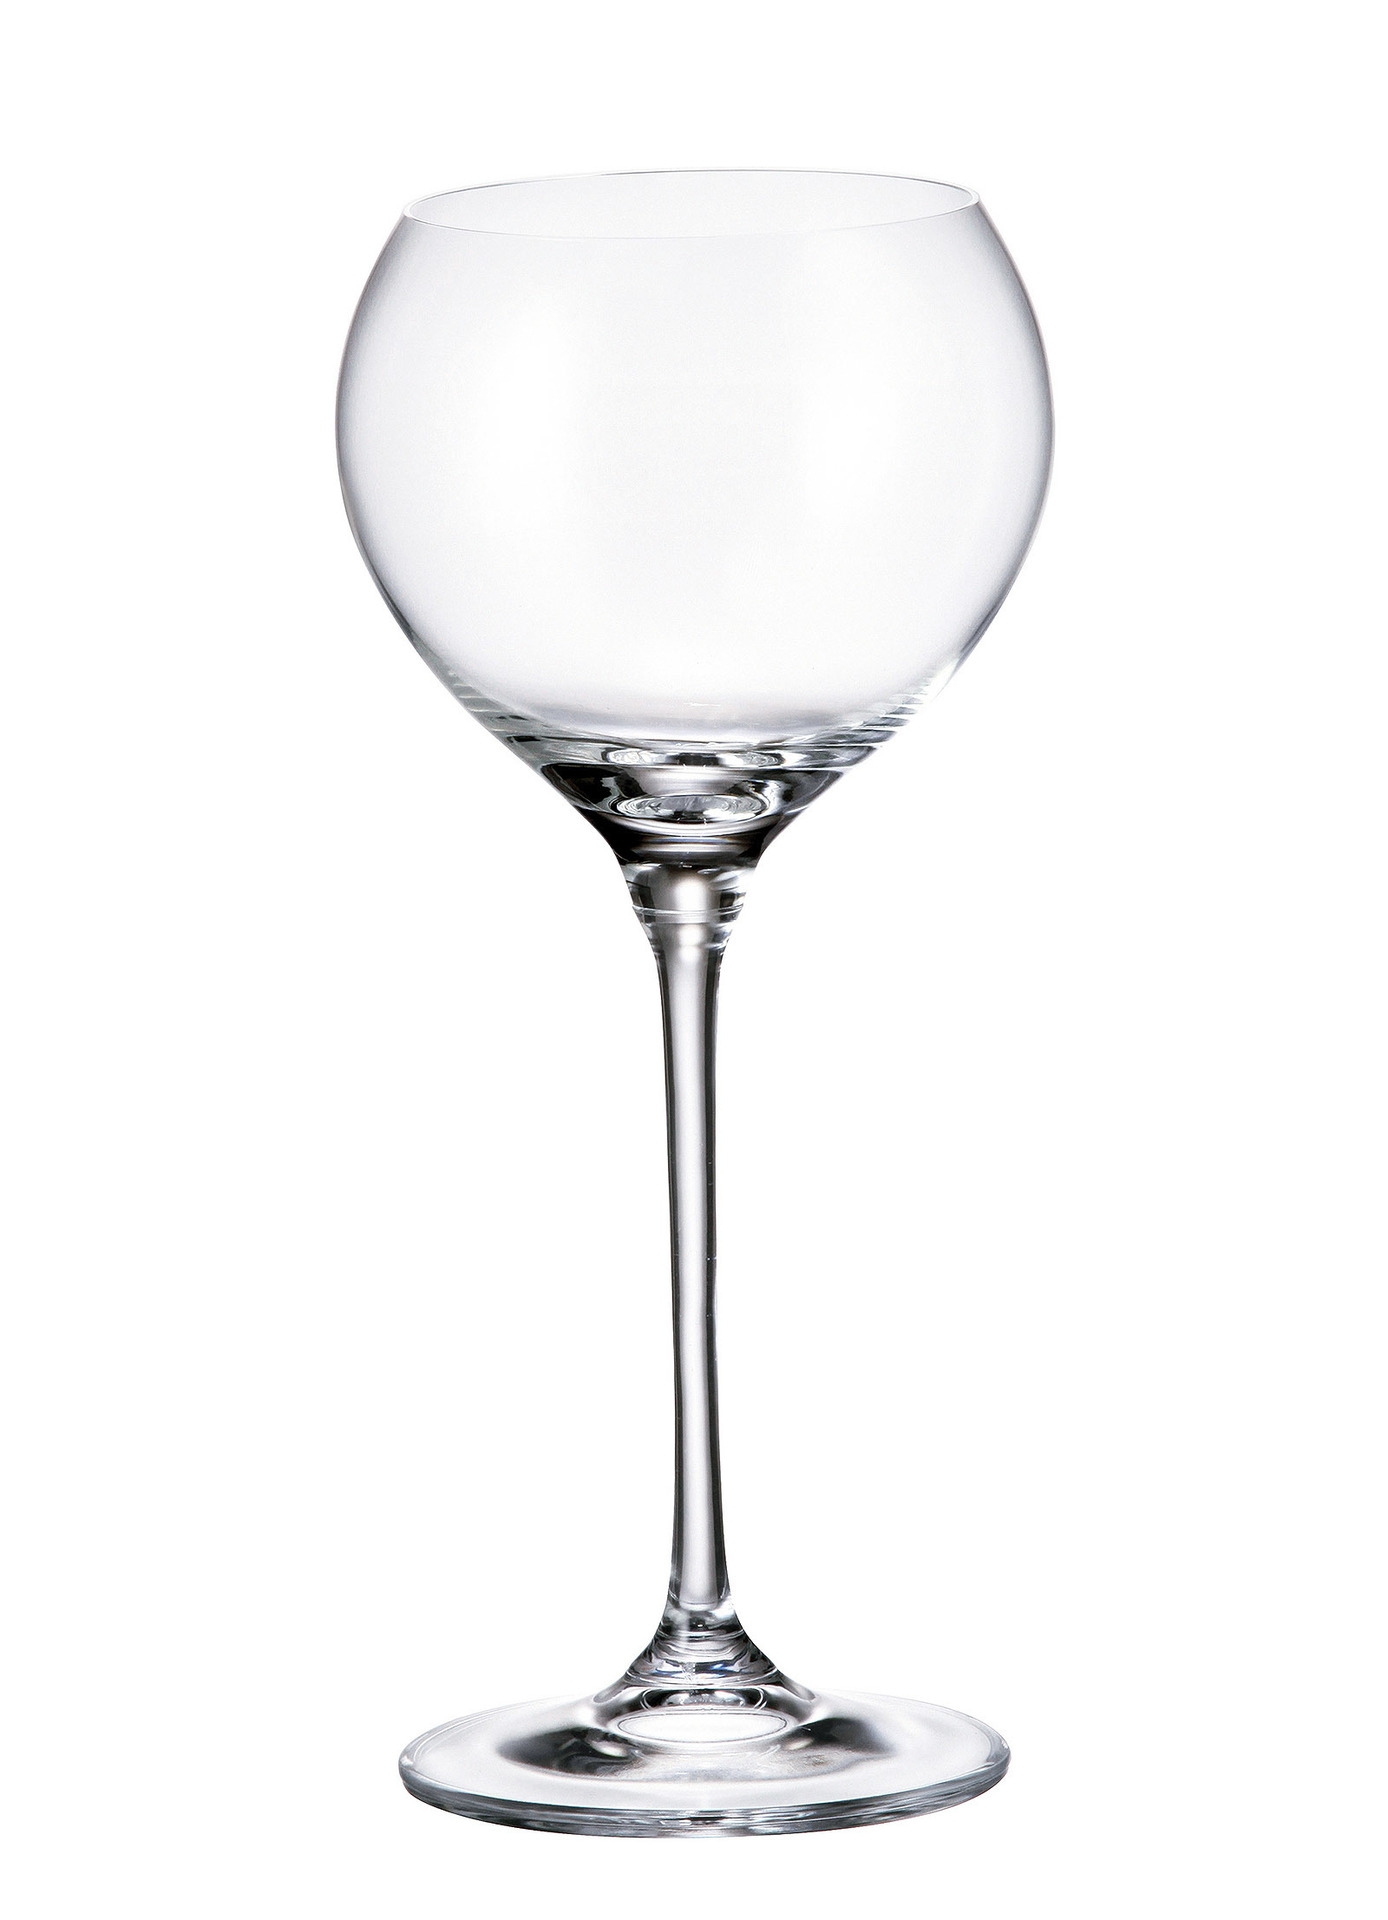 Ποτήρι Κρασιού Κρυστάλλινο Bohemia Carduelis 340ml CTB01F06340 (Σετ 6 Τεμάχια) (Υλικό: Κρύσταλλο, Χρώμα: Διάφανο , Μέγεθος: Κολωνάτο) – Κρύσταλλα Βοημίας – CTB01F06340